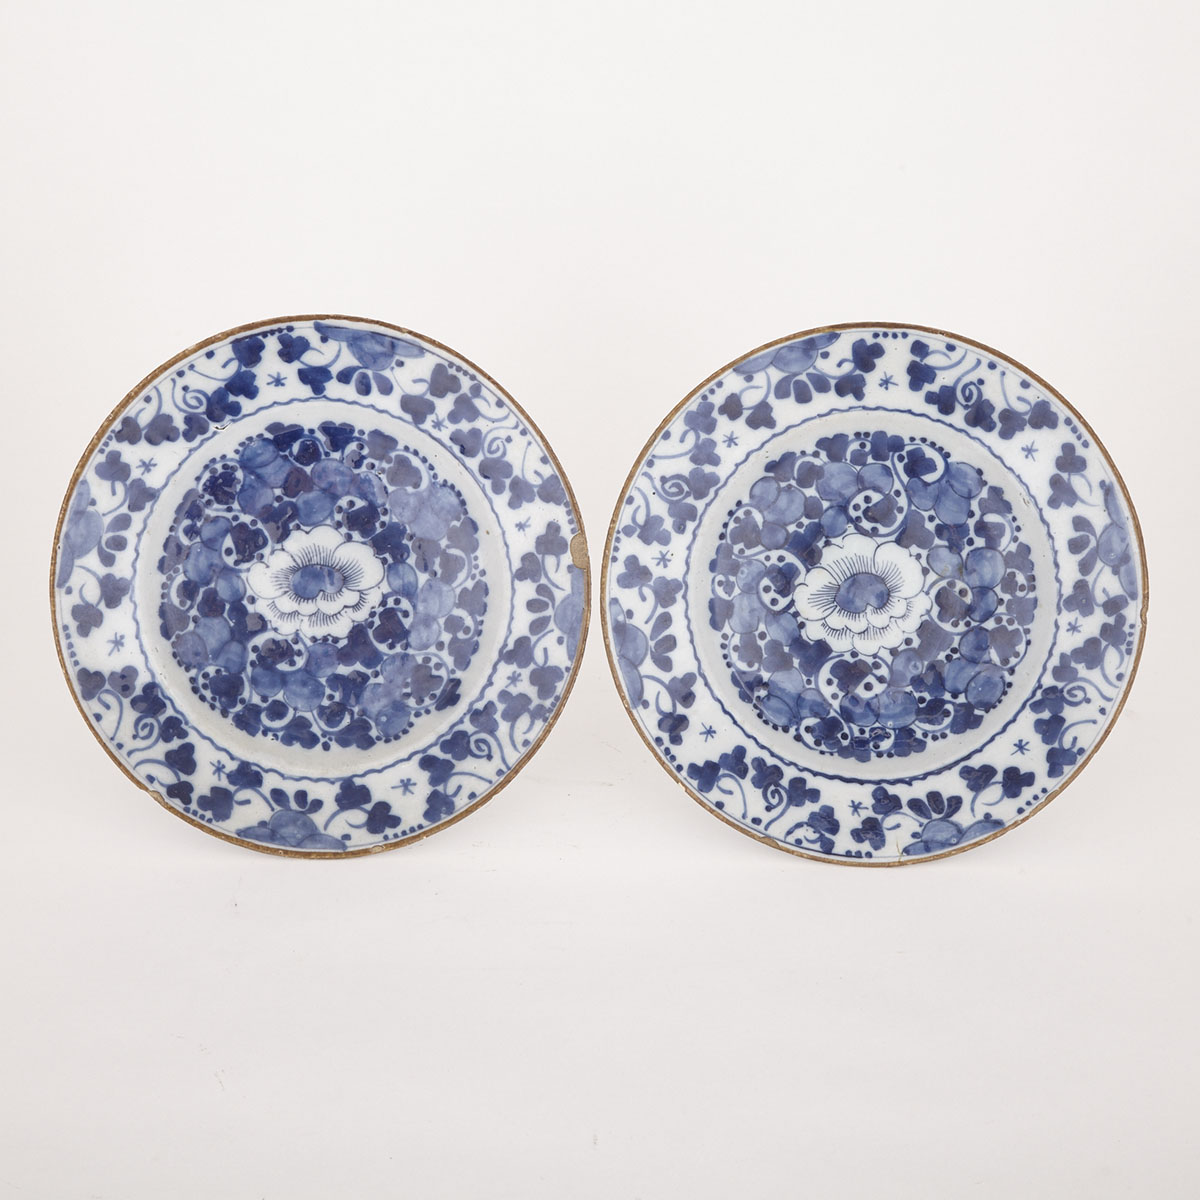 Pair of Delft Plates, 18th century